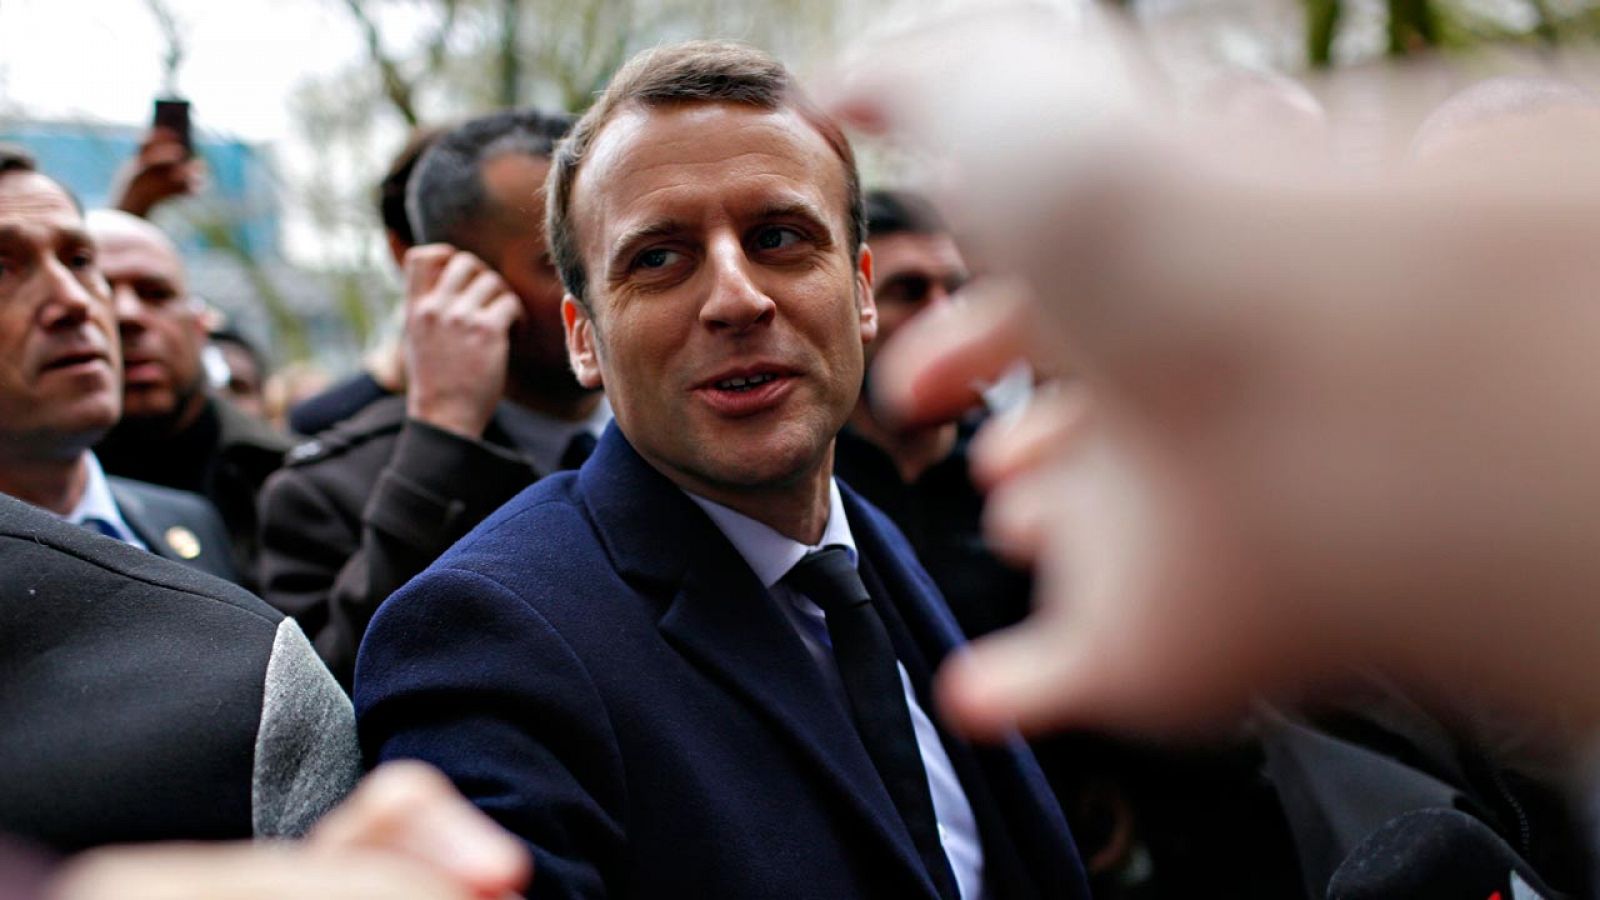 El candidato al Elíseo Emmanuel Macron, durante un acto electoral